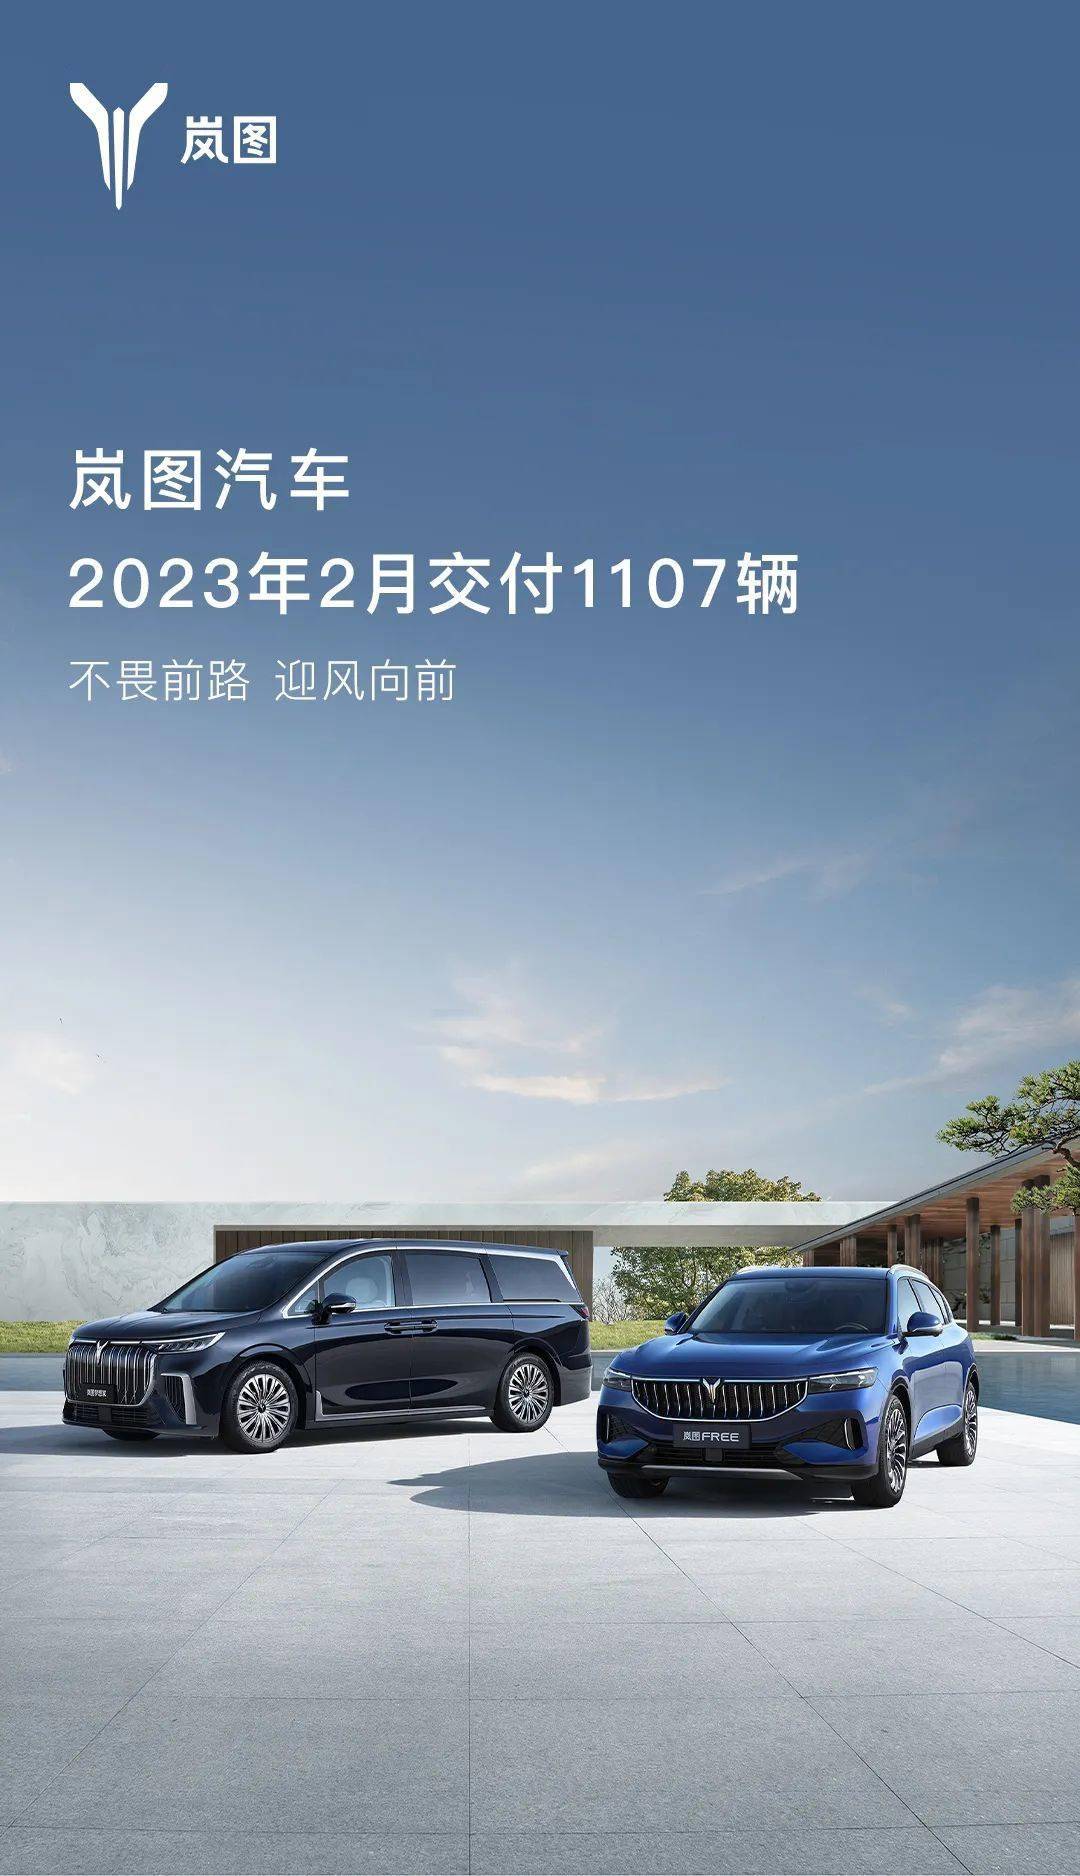 岚图汽车宣布：2023 年 2 月共交付 1107 辆汽车   增 7 家岚图空间